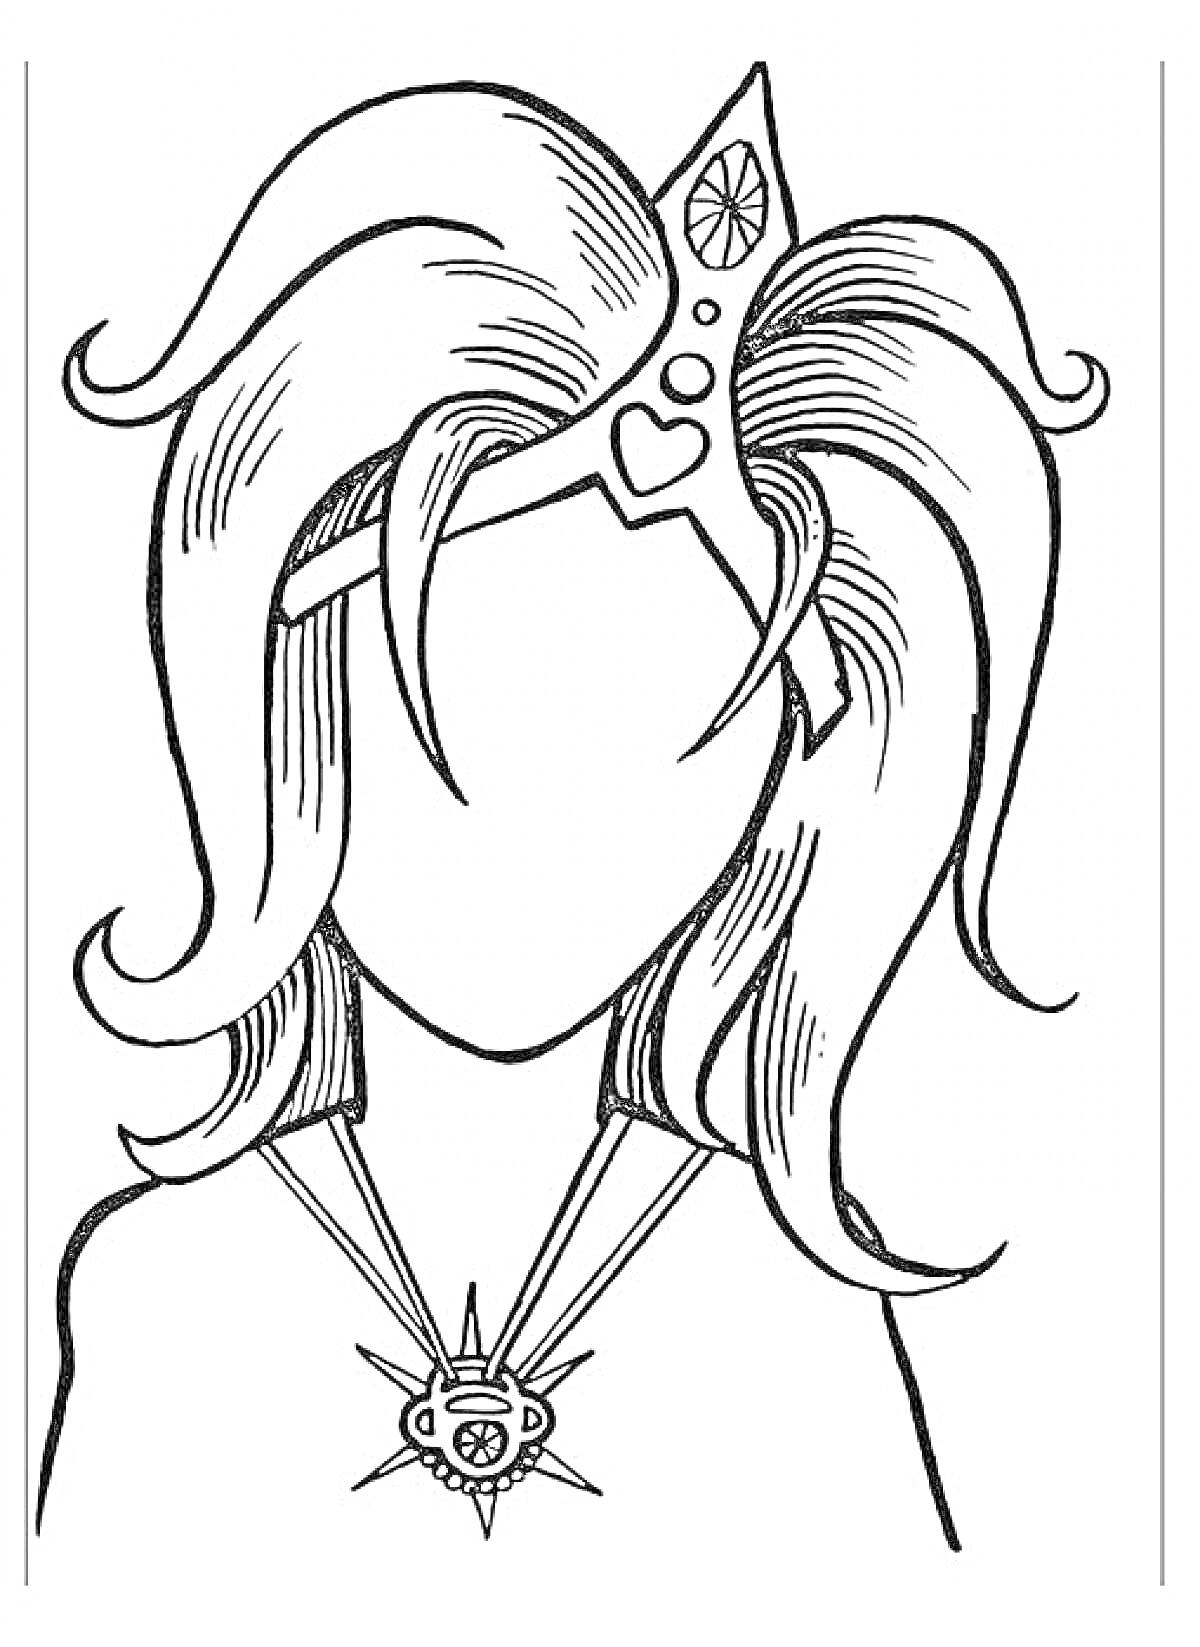 Раскраска Портрет женщины с короной, ожерельем и волнистыми волосами